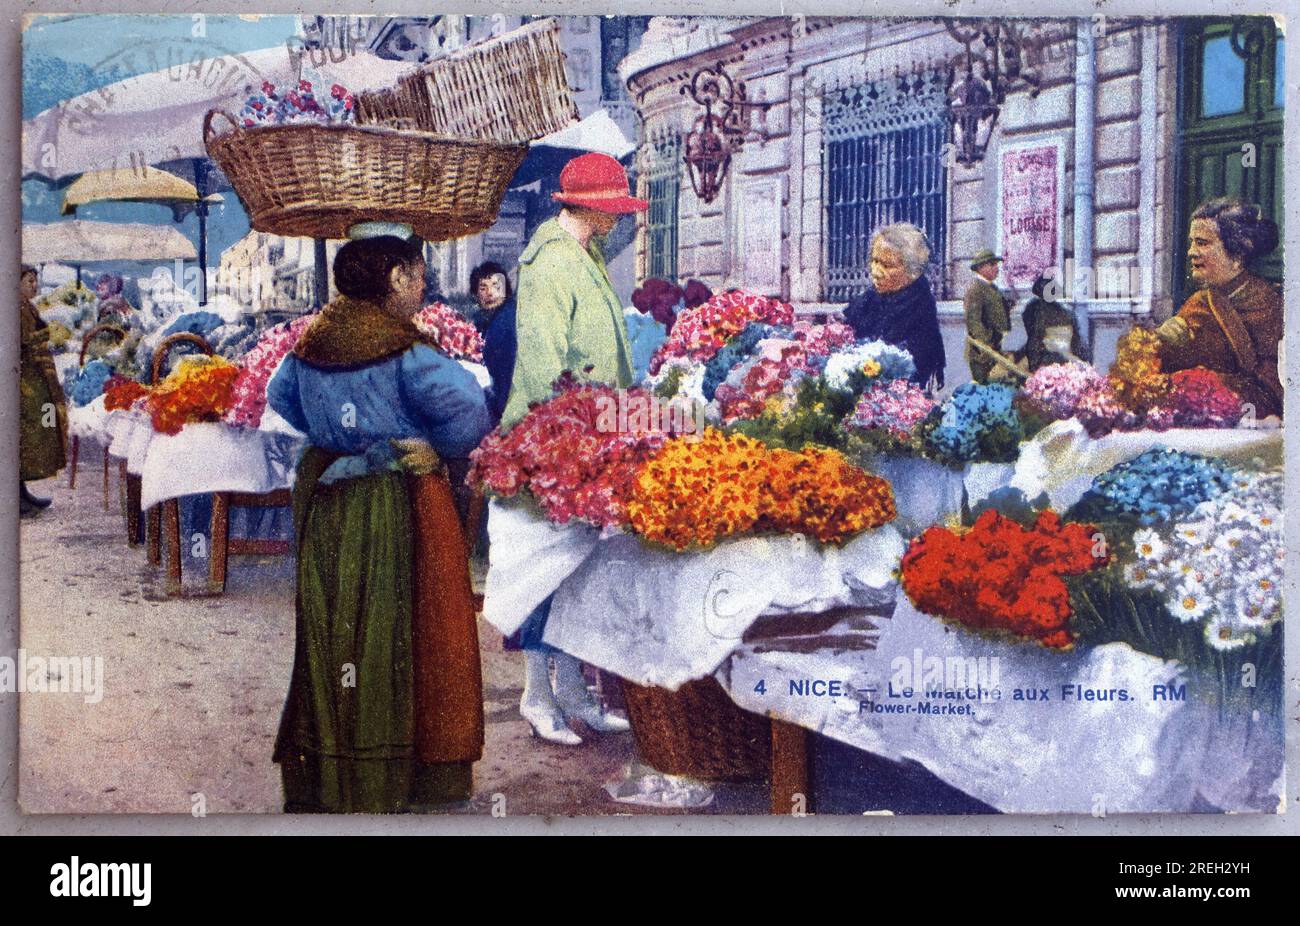 Nice, le marché aux fleurs. Carte postale ancienne photographie, colorizee debut 20e siecle. Banque D'Images